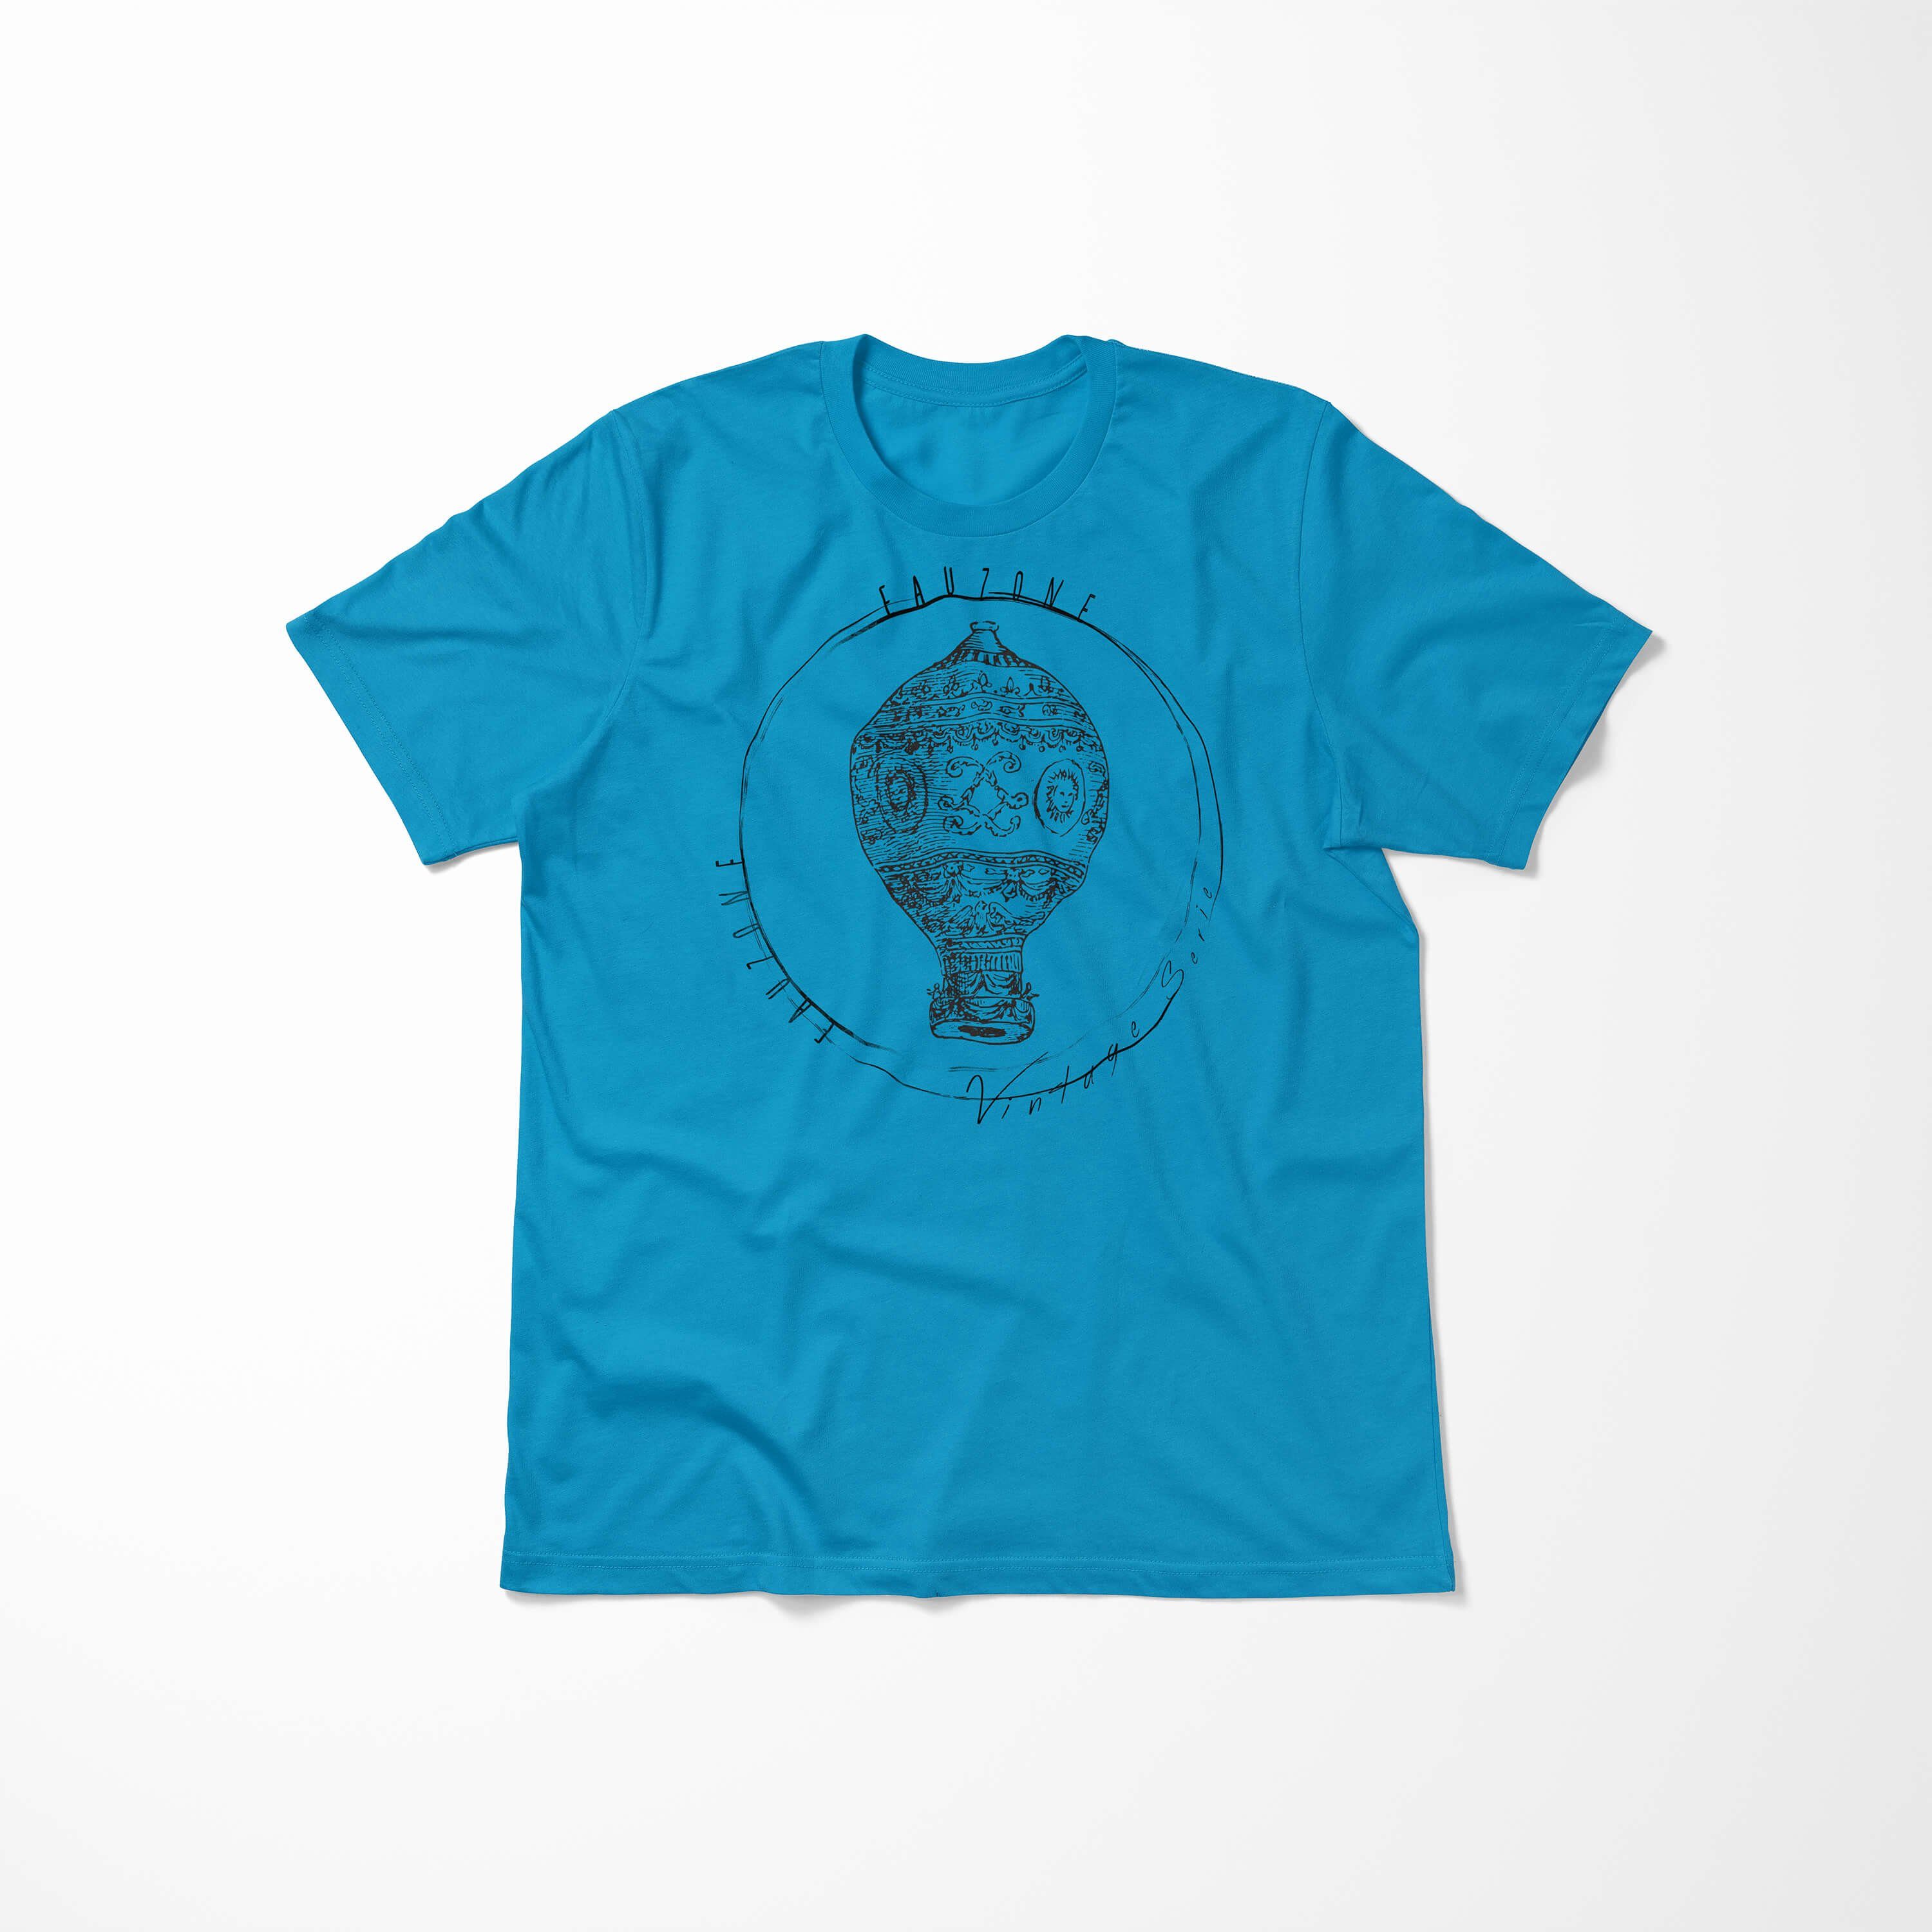 Herren Sinus T-Shirt Atoll Art T-Shirt Heizluftballon Vintage